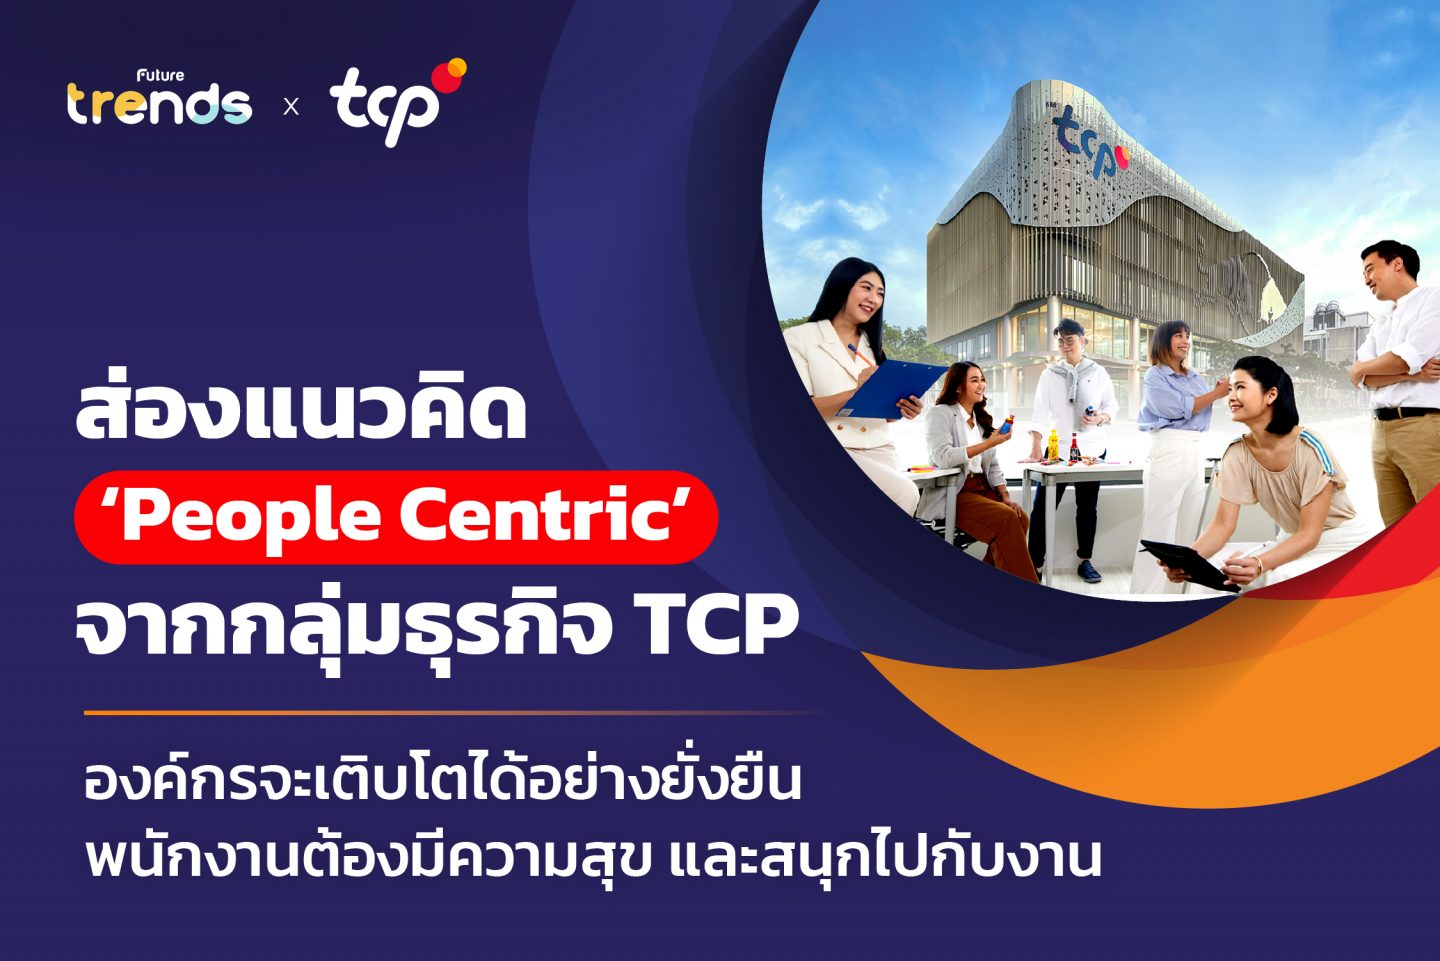 ส่องแนวคิด ‘People Centric’ จากกลุ่มธุรกิจ TCP องค์กรจะเติบโตได้อย่างยั่งยืน พนักงานต้องมีความสุข และสนุกไปกับงาน